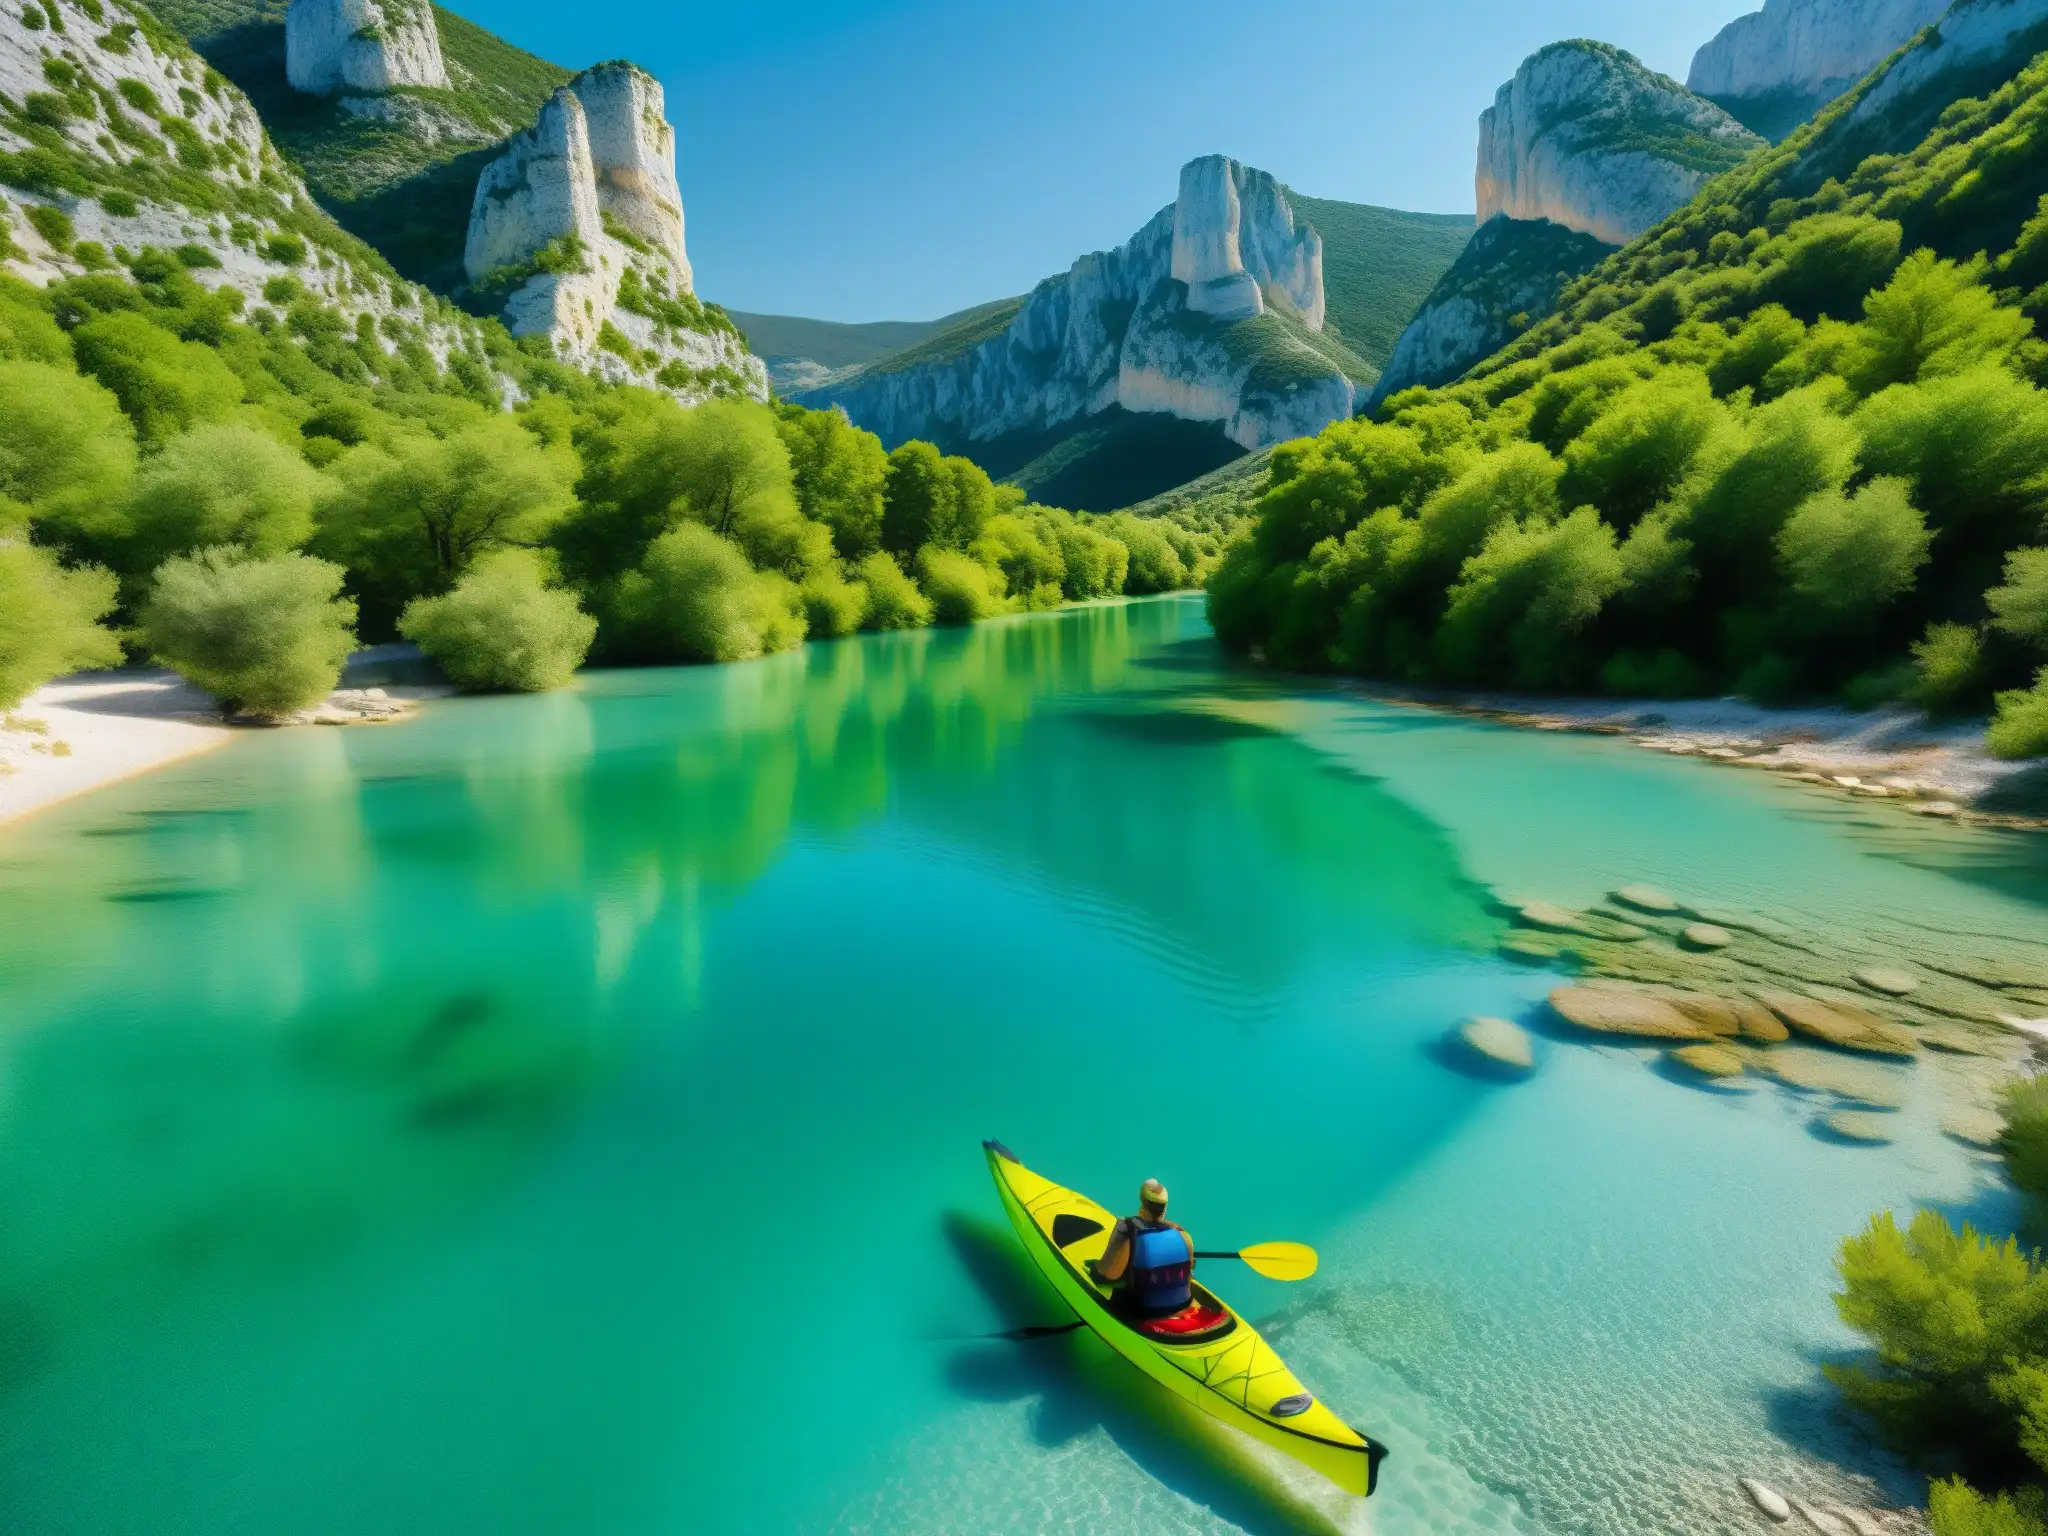 Un paisaje mágico del río Verdon en Provence, con deidades fluviales del folklore mediterráneo y un kayak solitario